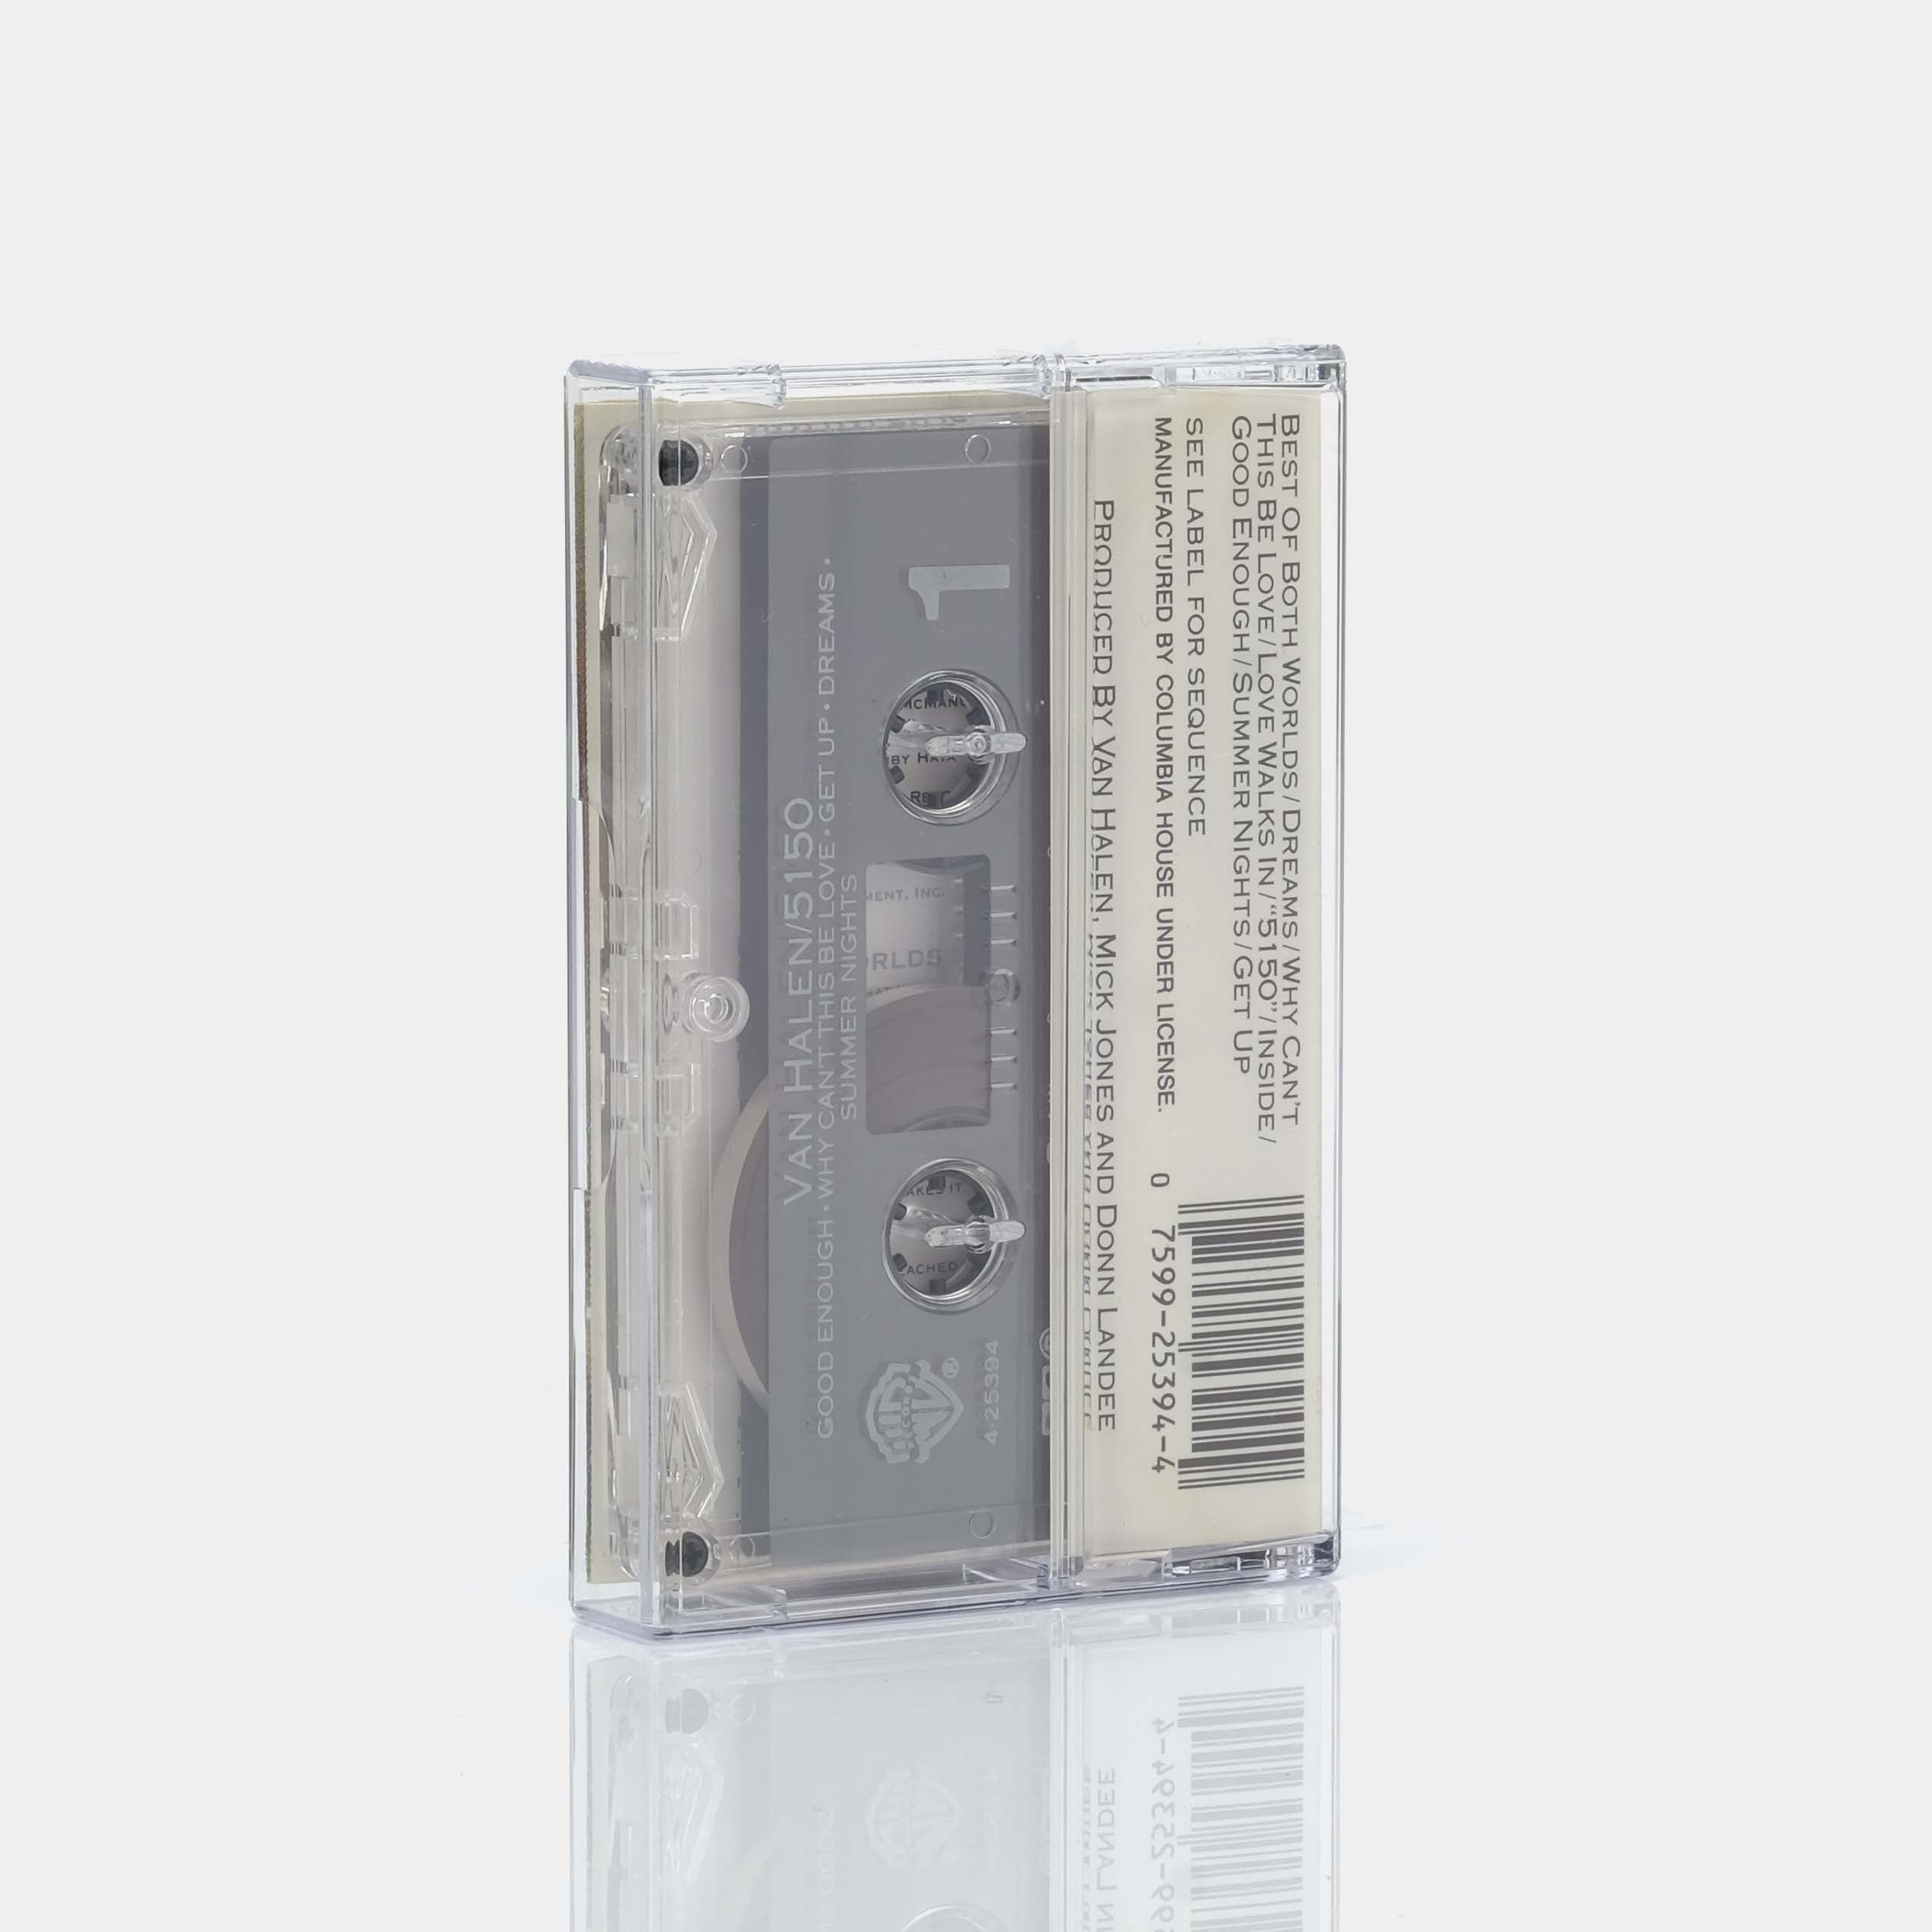 Van Halen - 5150 Cassette Tape